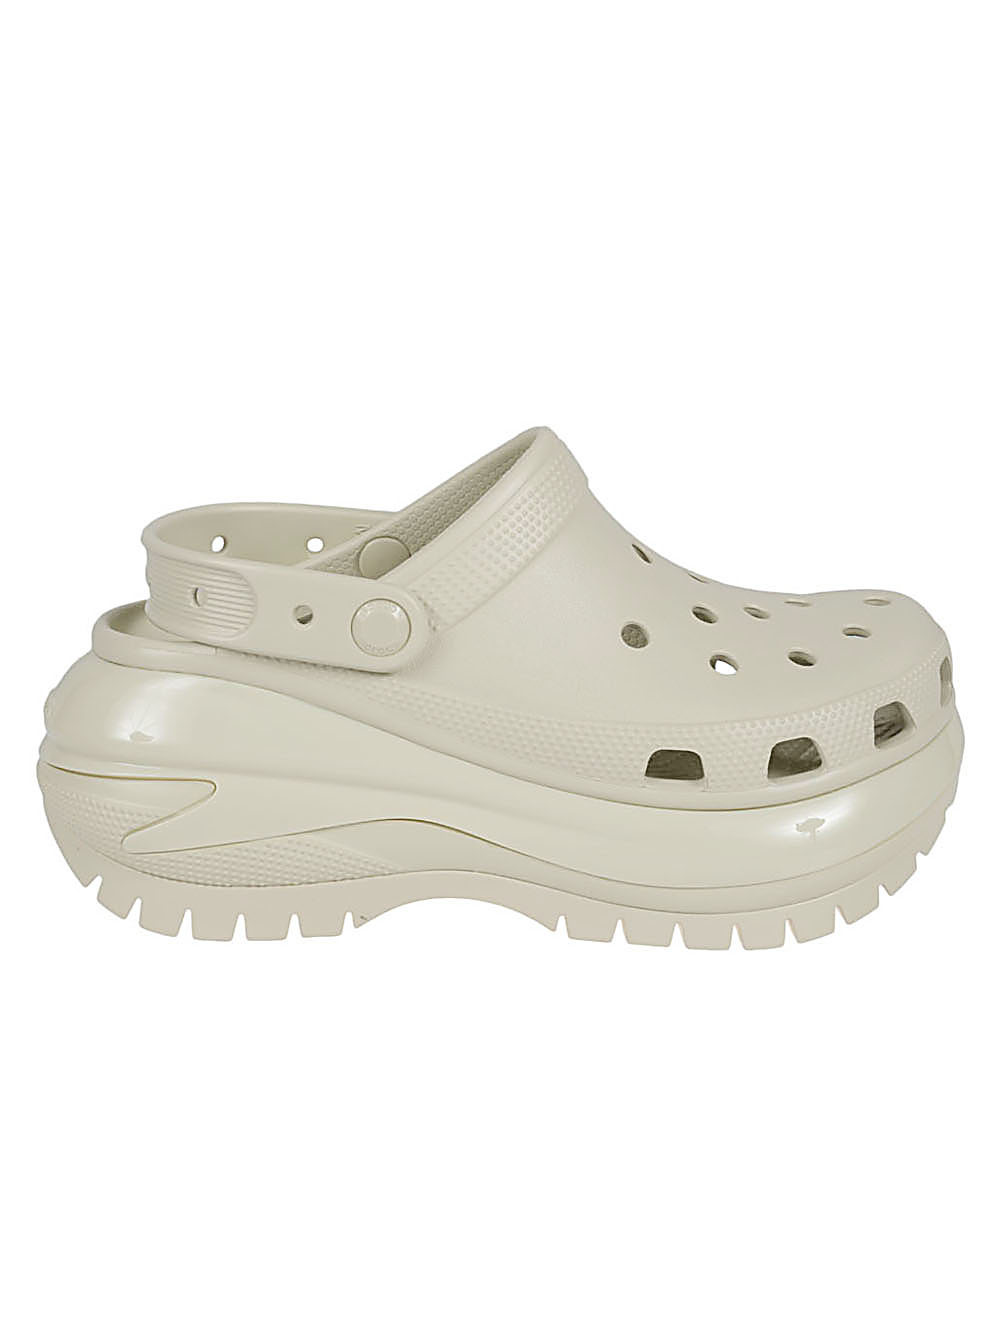 Crocs CROCS- Mega Crush Clog Sandals